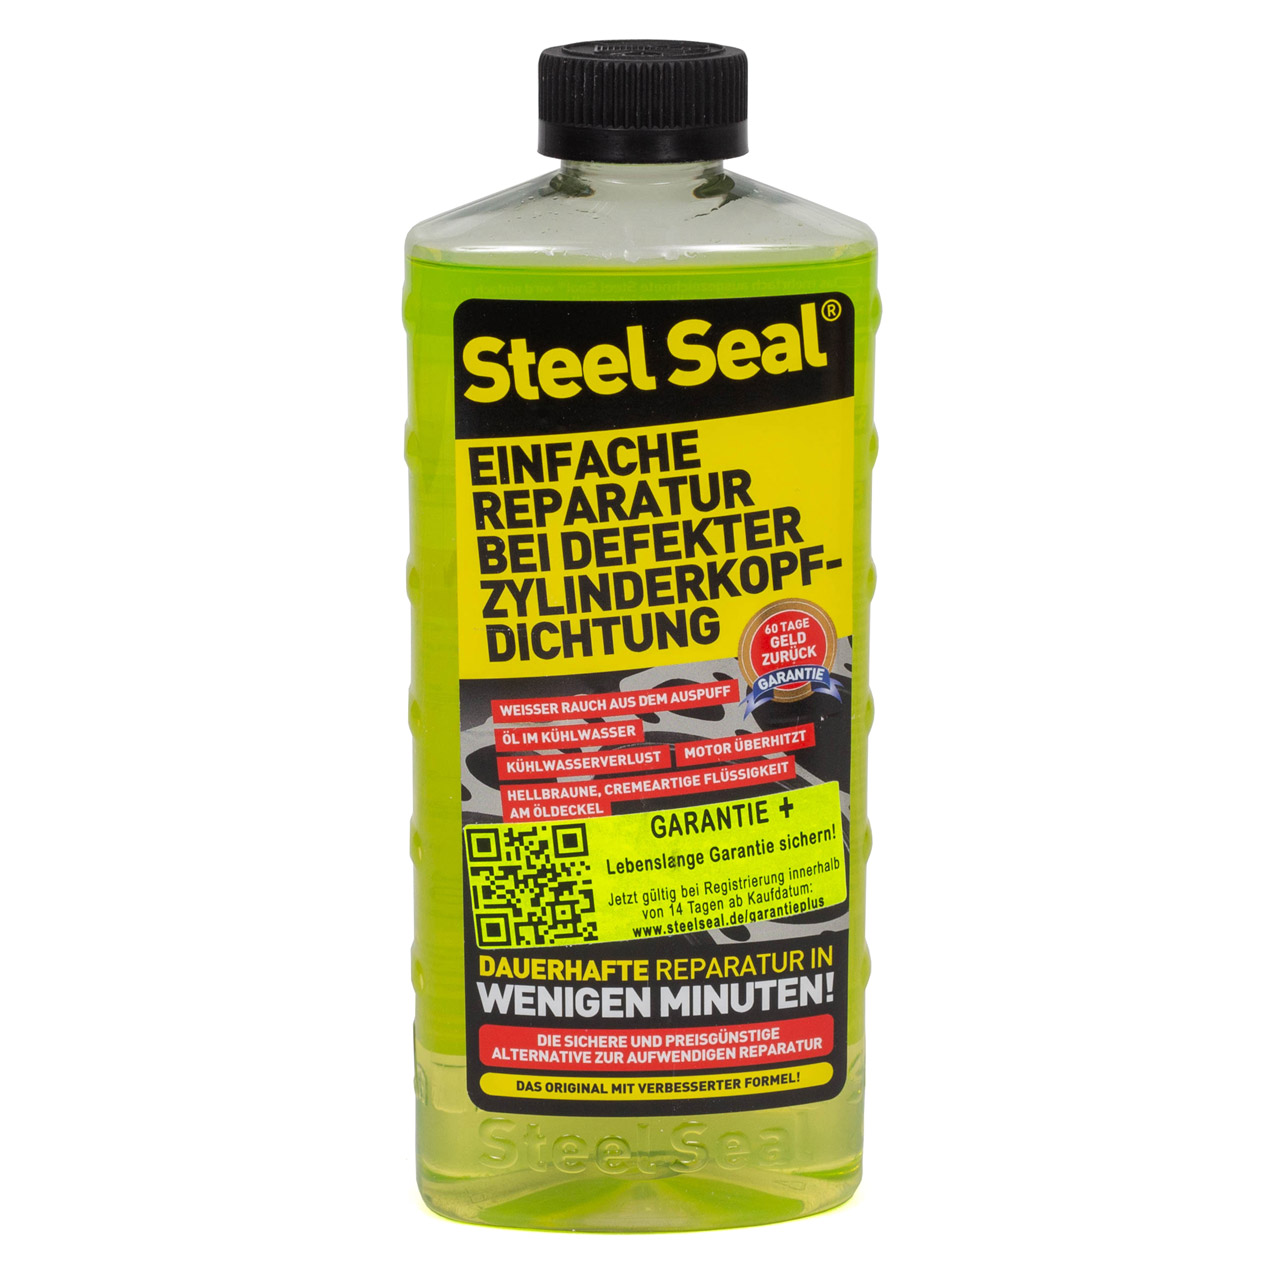 Steel Seal